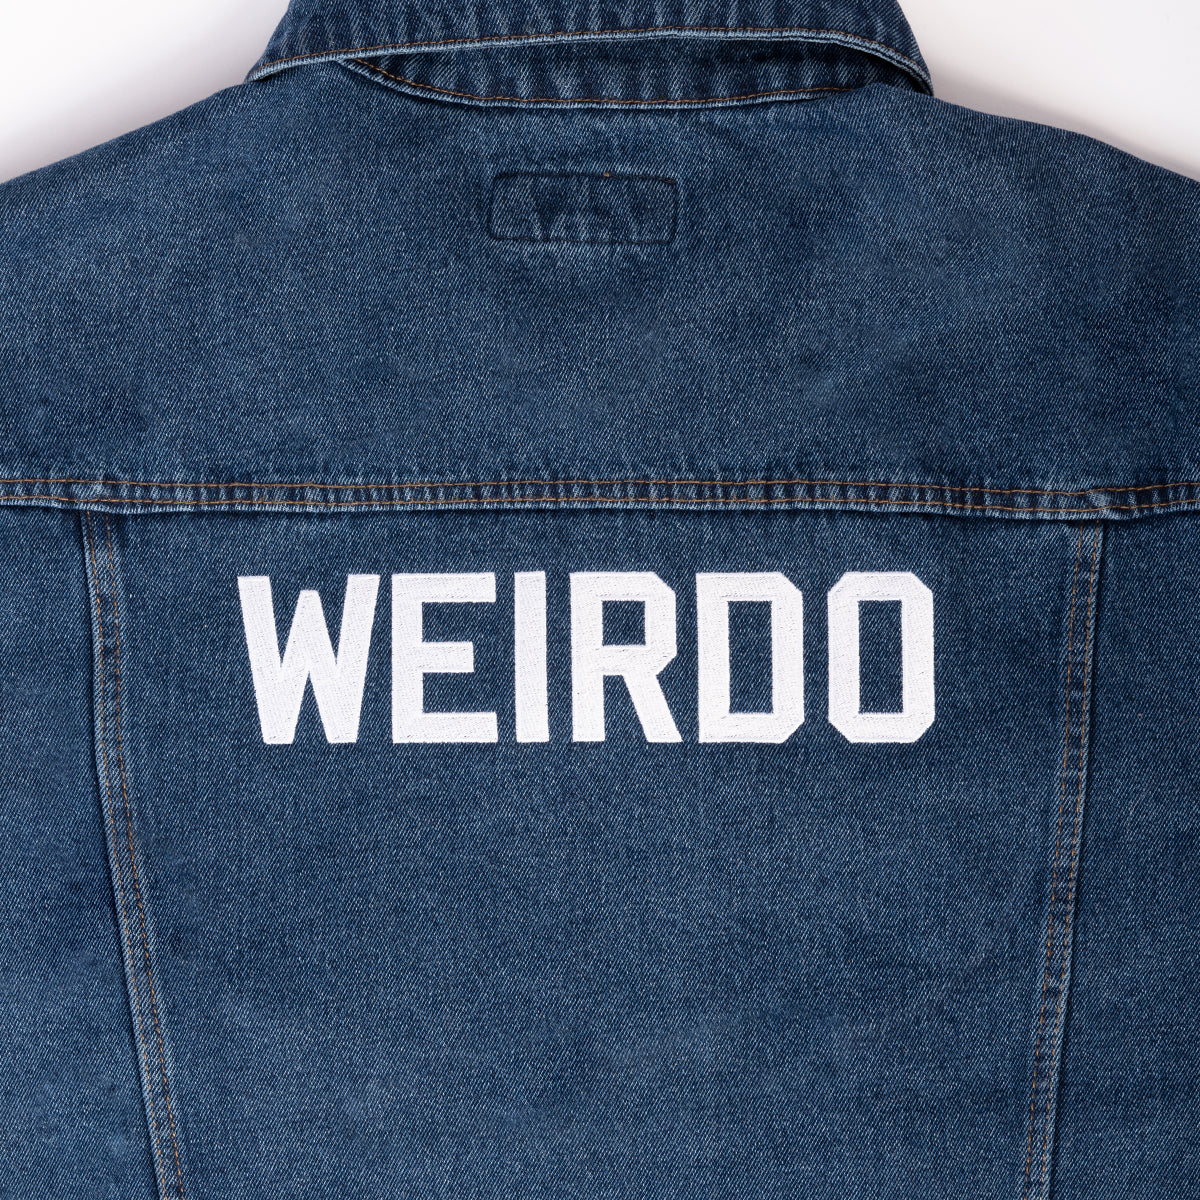 Morbid Weirdo Embroidered Denim Jacket